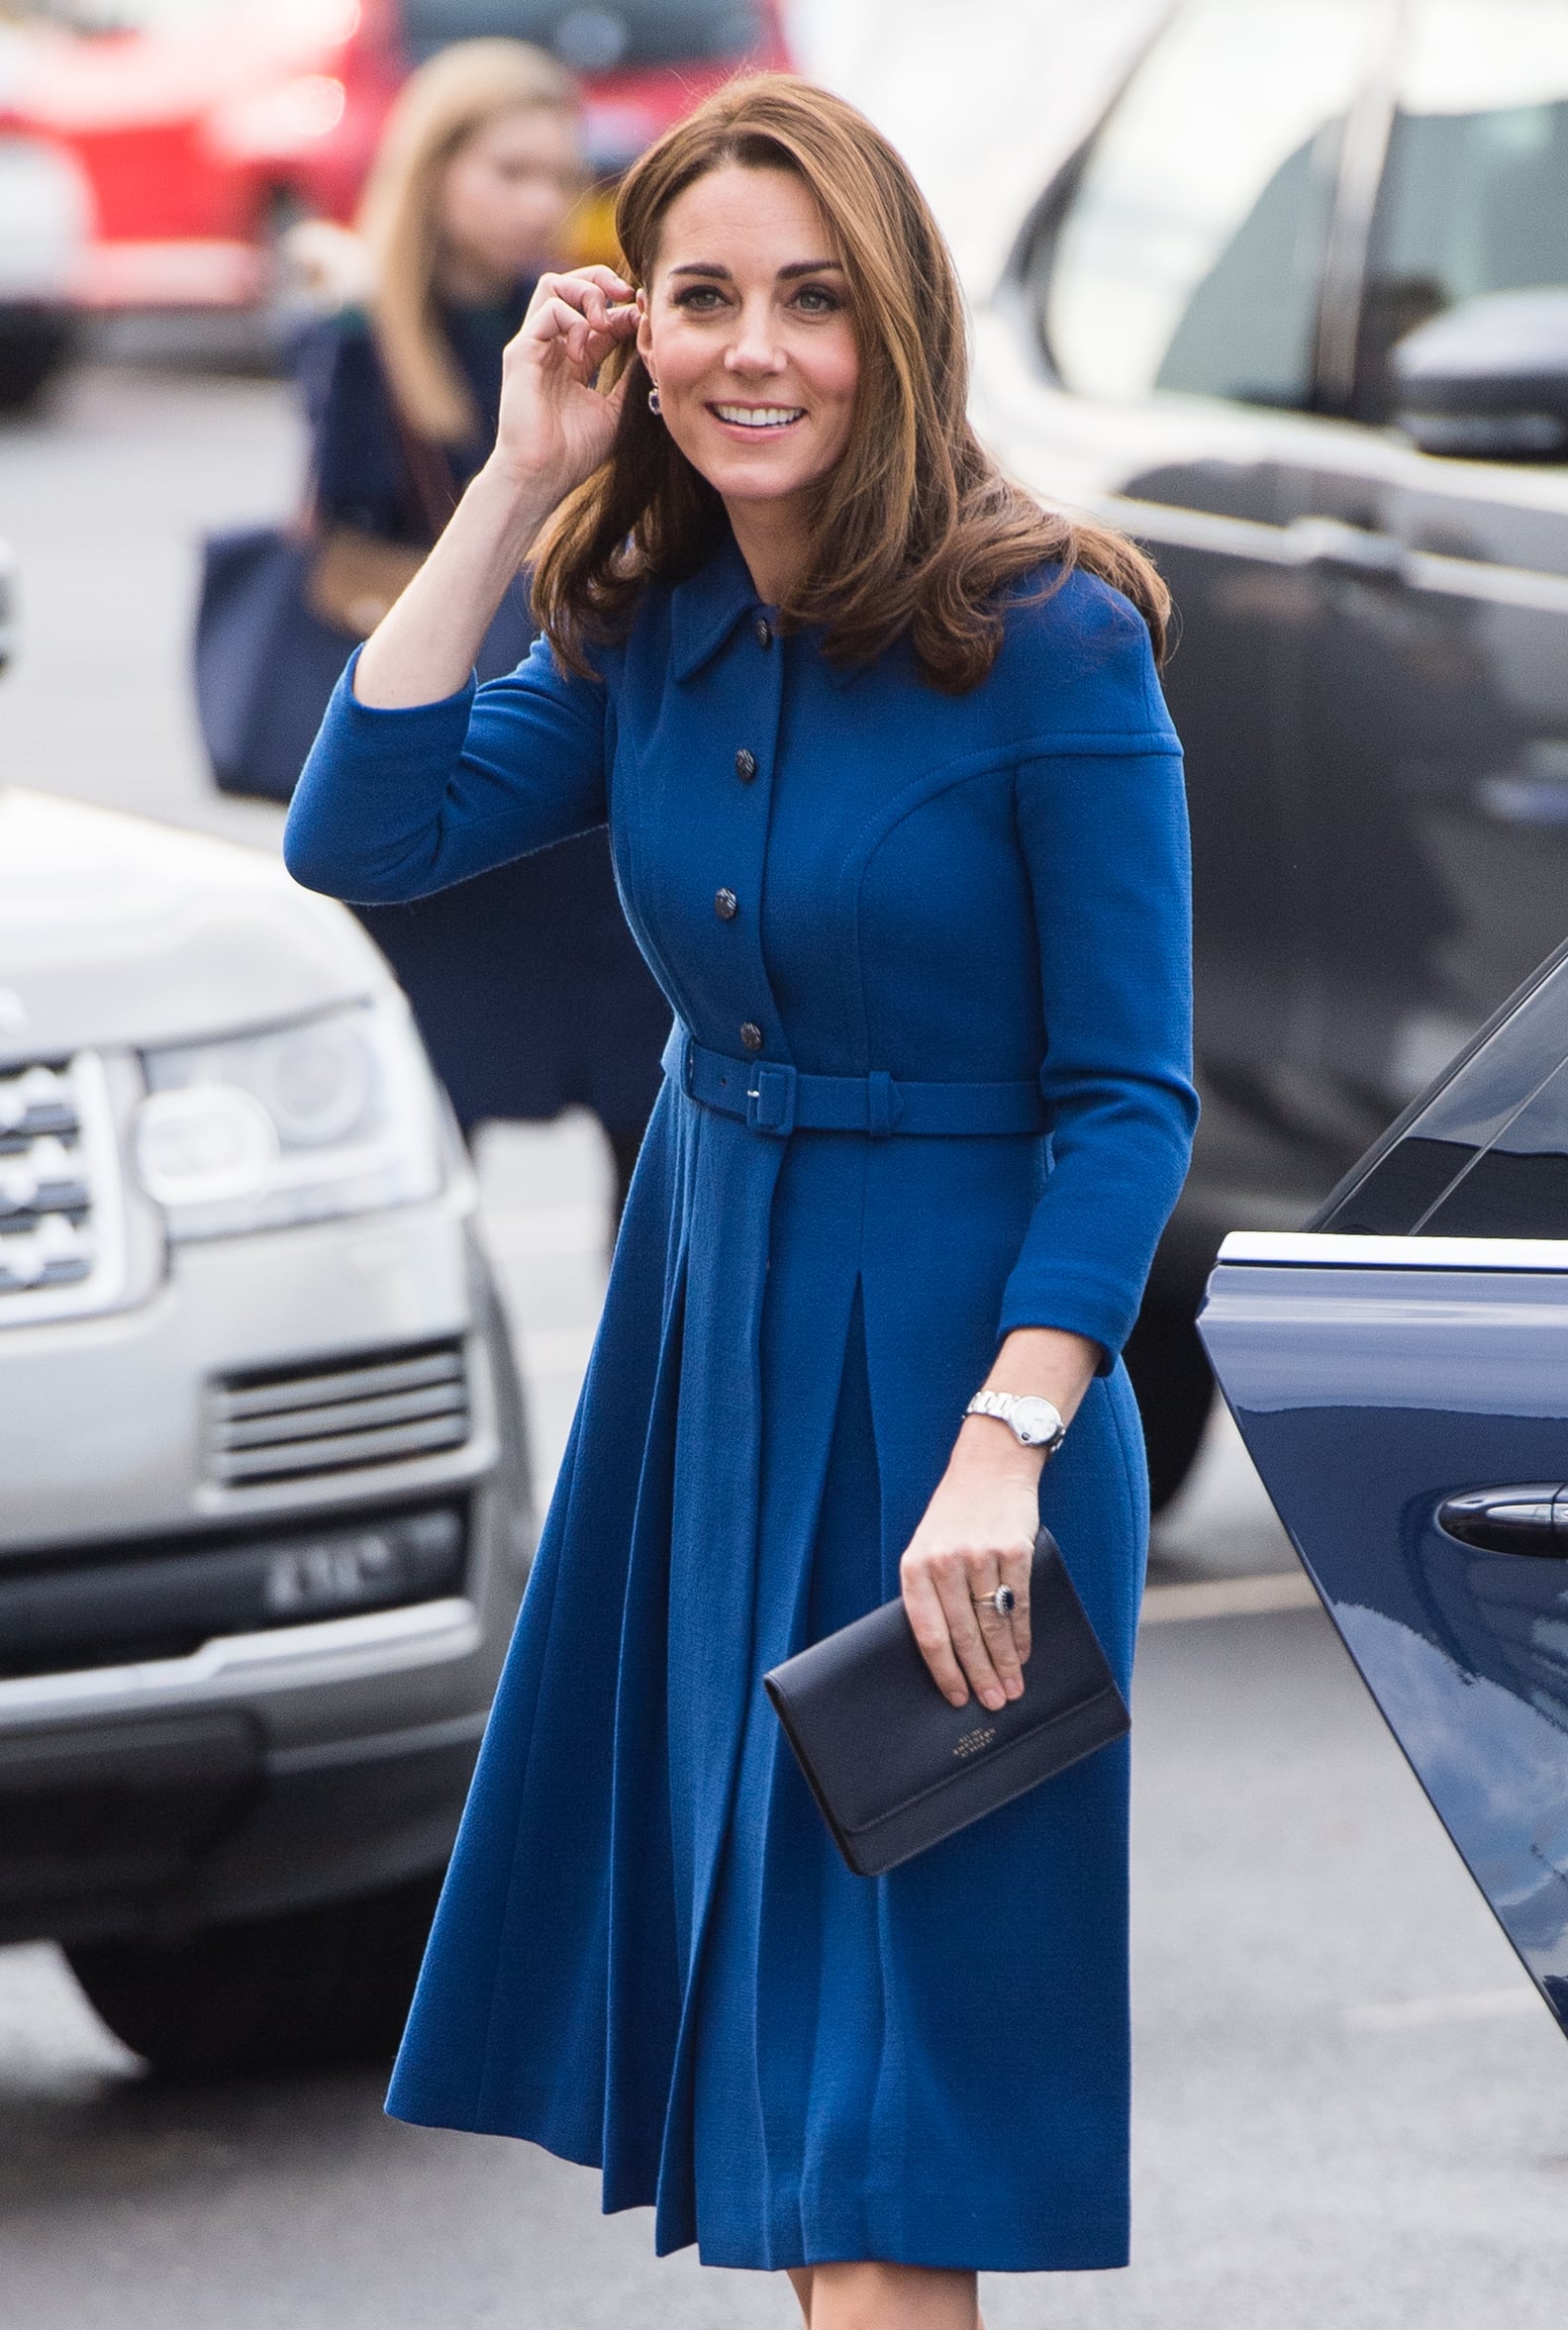 Kate Middleton Blue Eponine Dress November 2018 | POPSUGAR Fashion